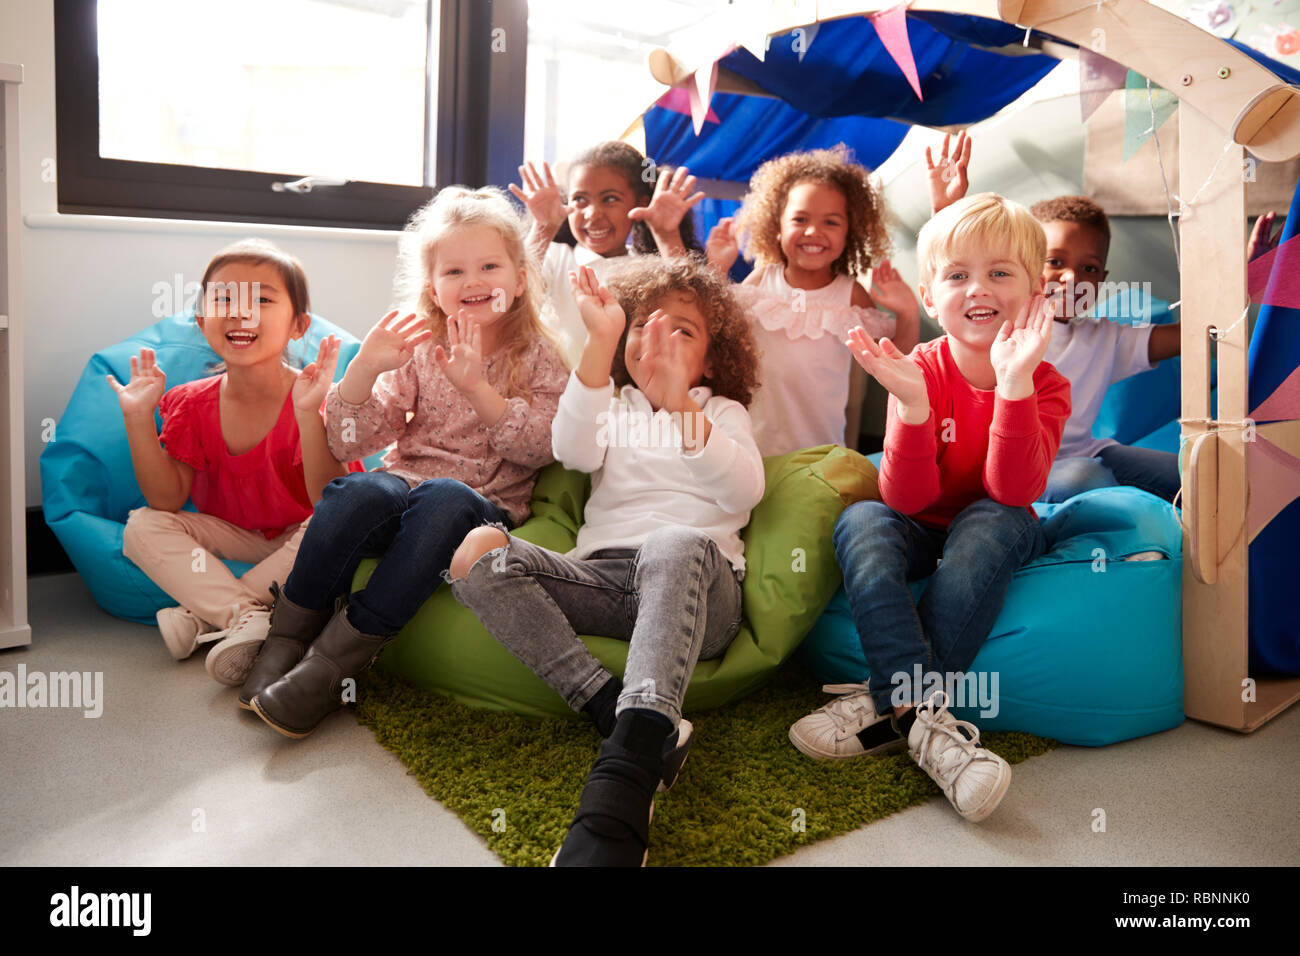 Un grupo multiétnico de escuela infantil niños sentados en sacos de frijoles en un confortable rincón del aula, sonriendo y saludando a la cámara, bajo el ángulo, cerrar Foto de stock